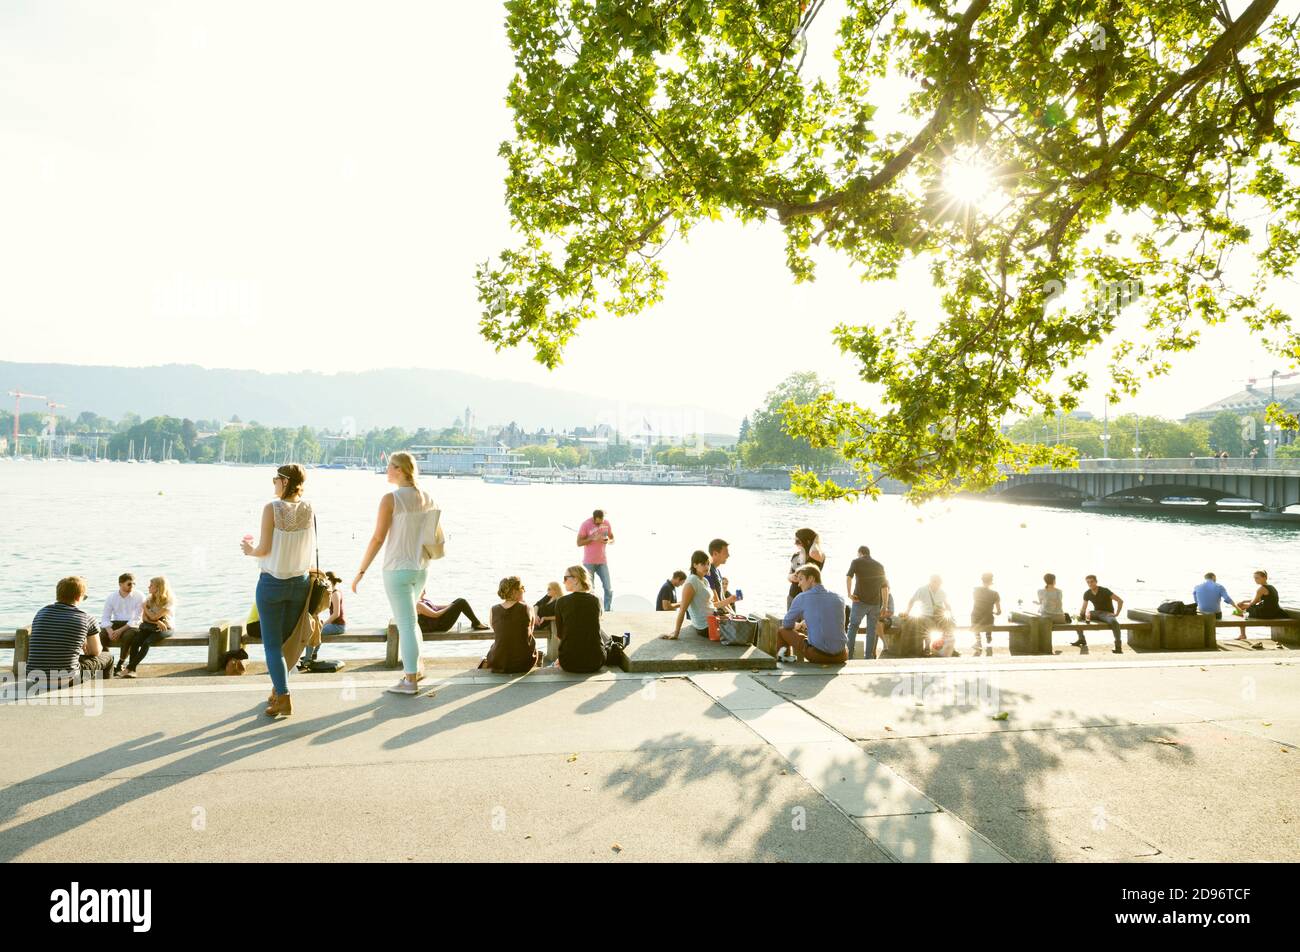 Zurigo, Svizzera - 17 luglio 2014: Persone che socializzano sulle rive del lago di Zurigo in Svizzera Foto Stock